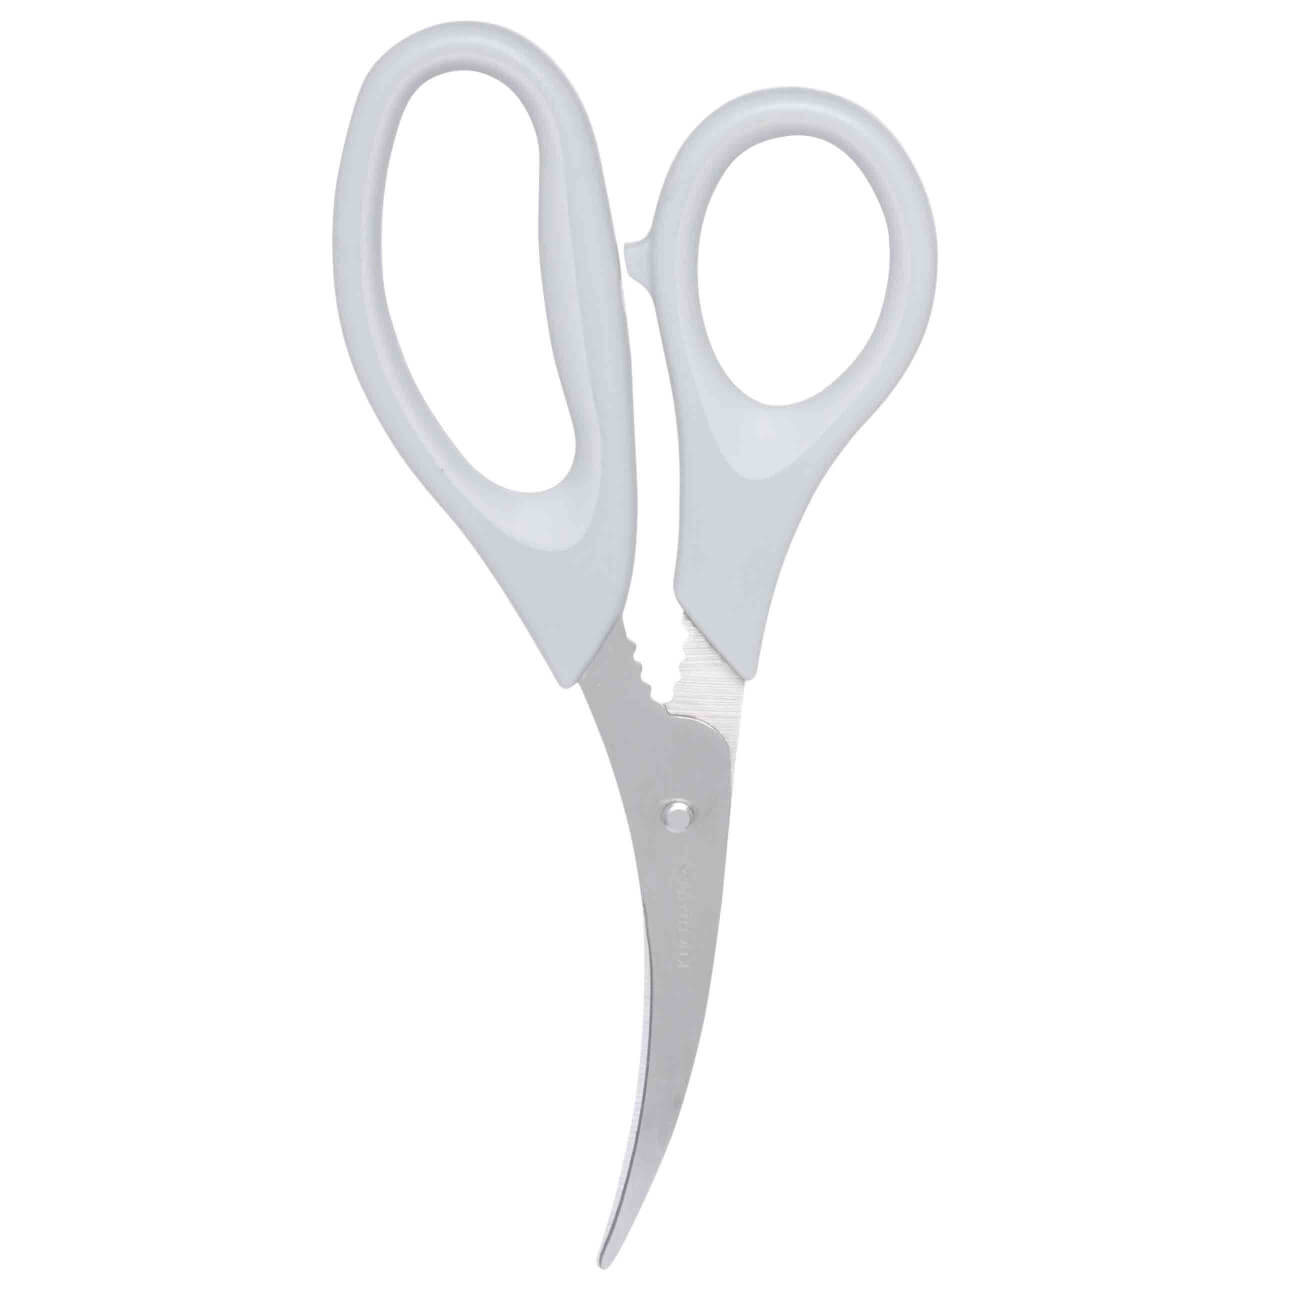 Ножницы для морепродуктов, 18 см, сталь/пластик, серые, Assist универсальные ножницы mr logo